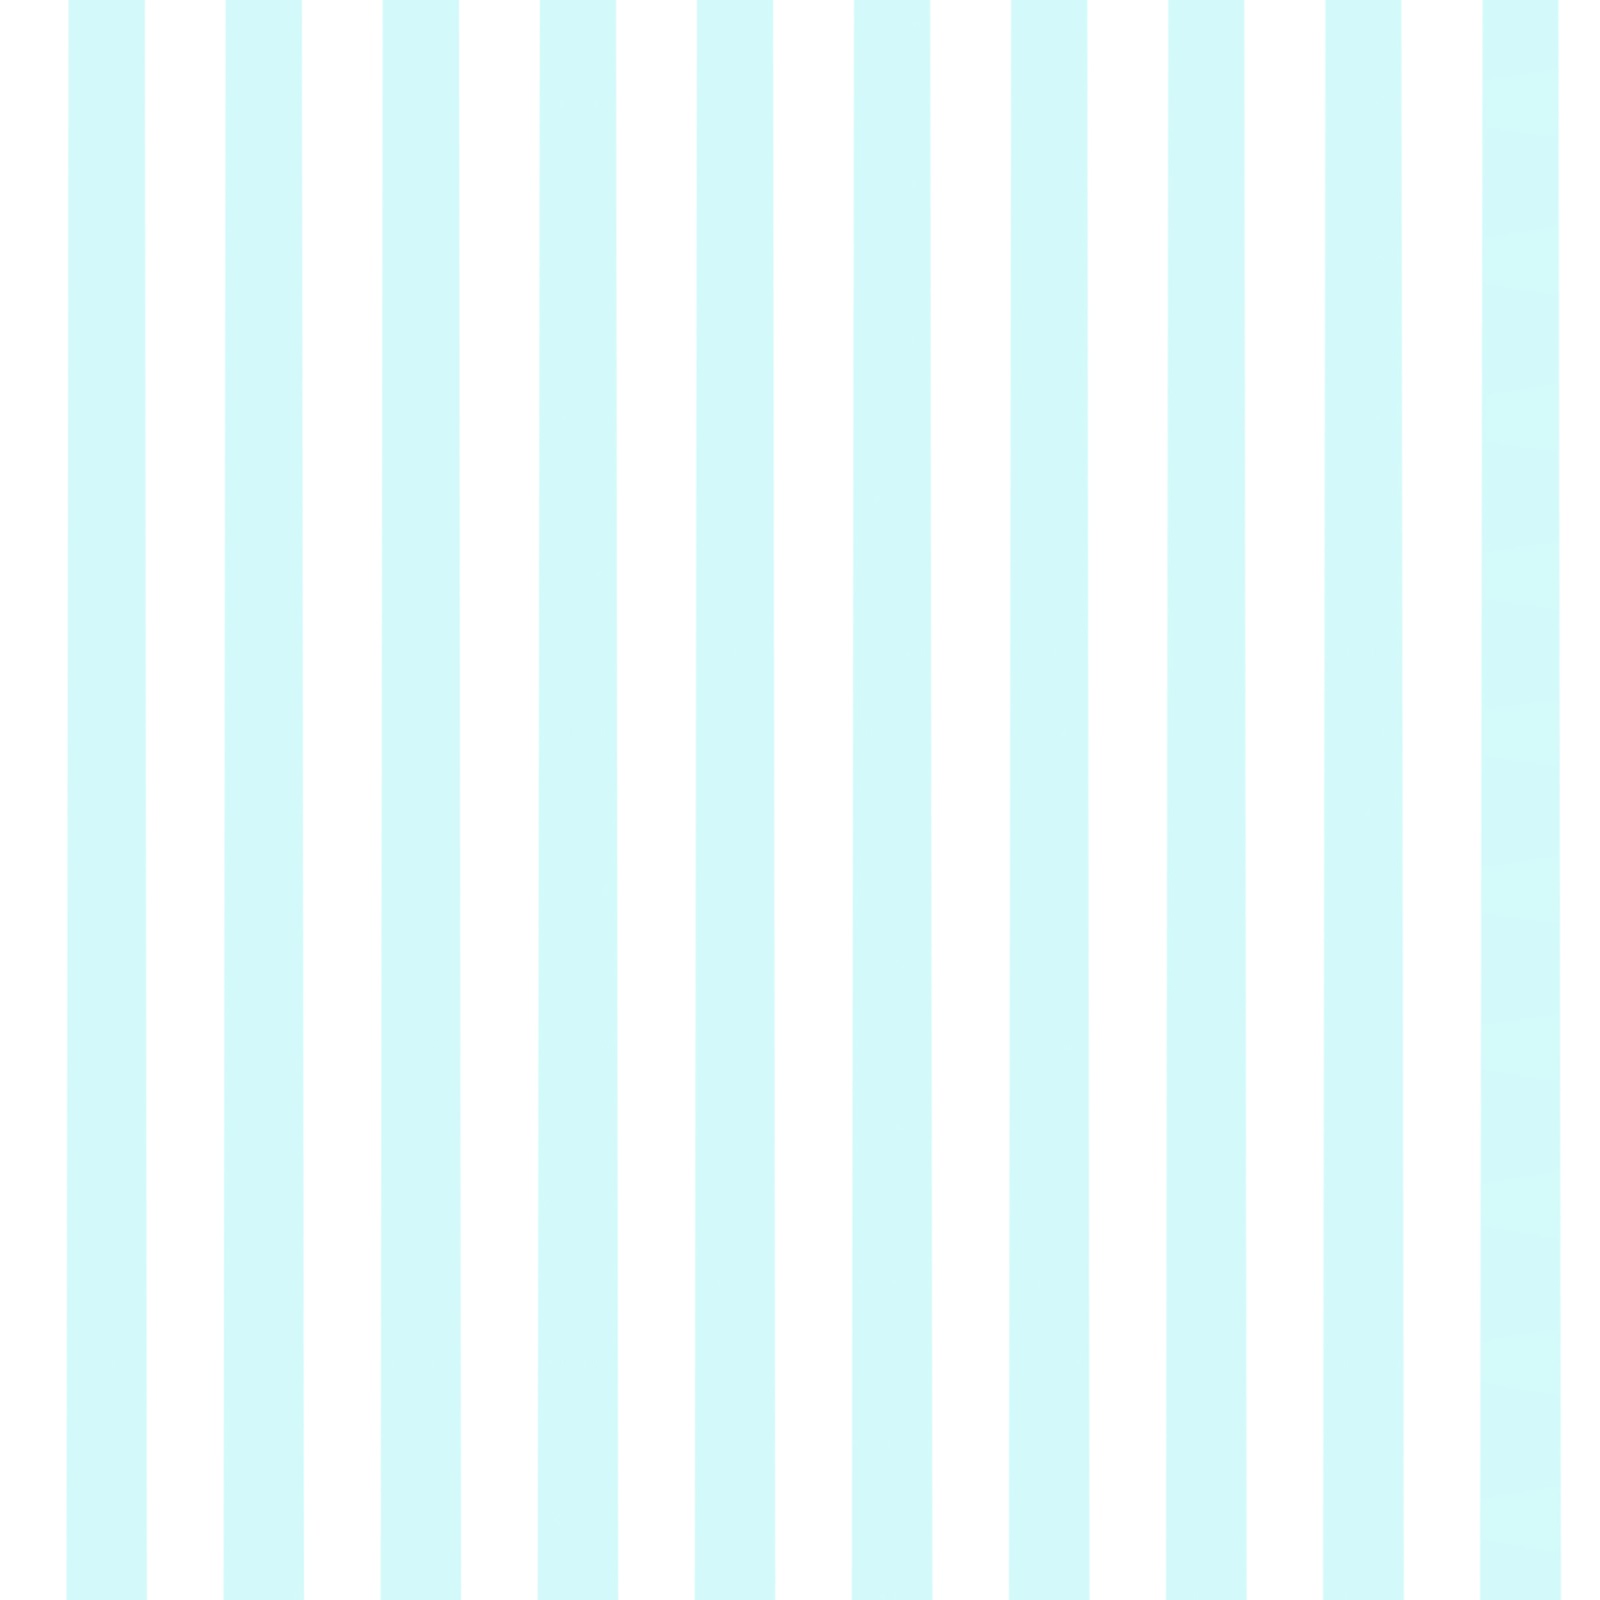 blue white stripes